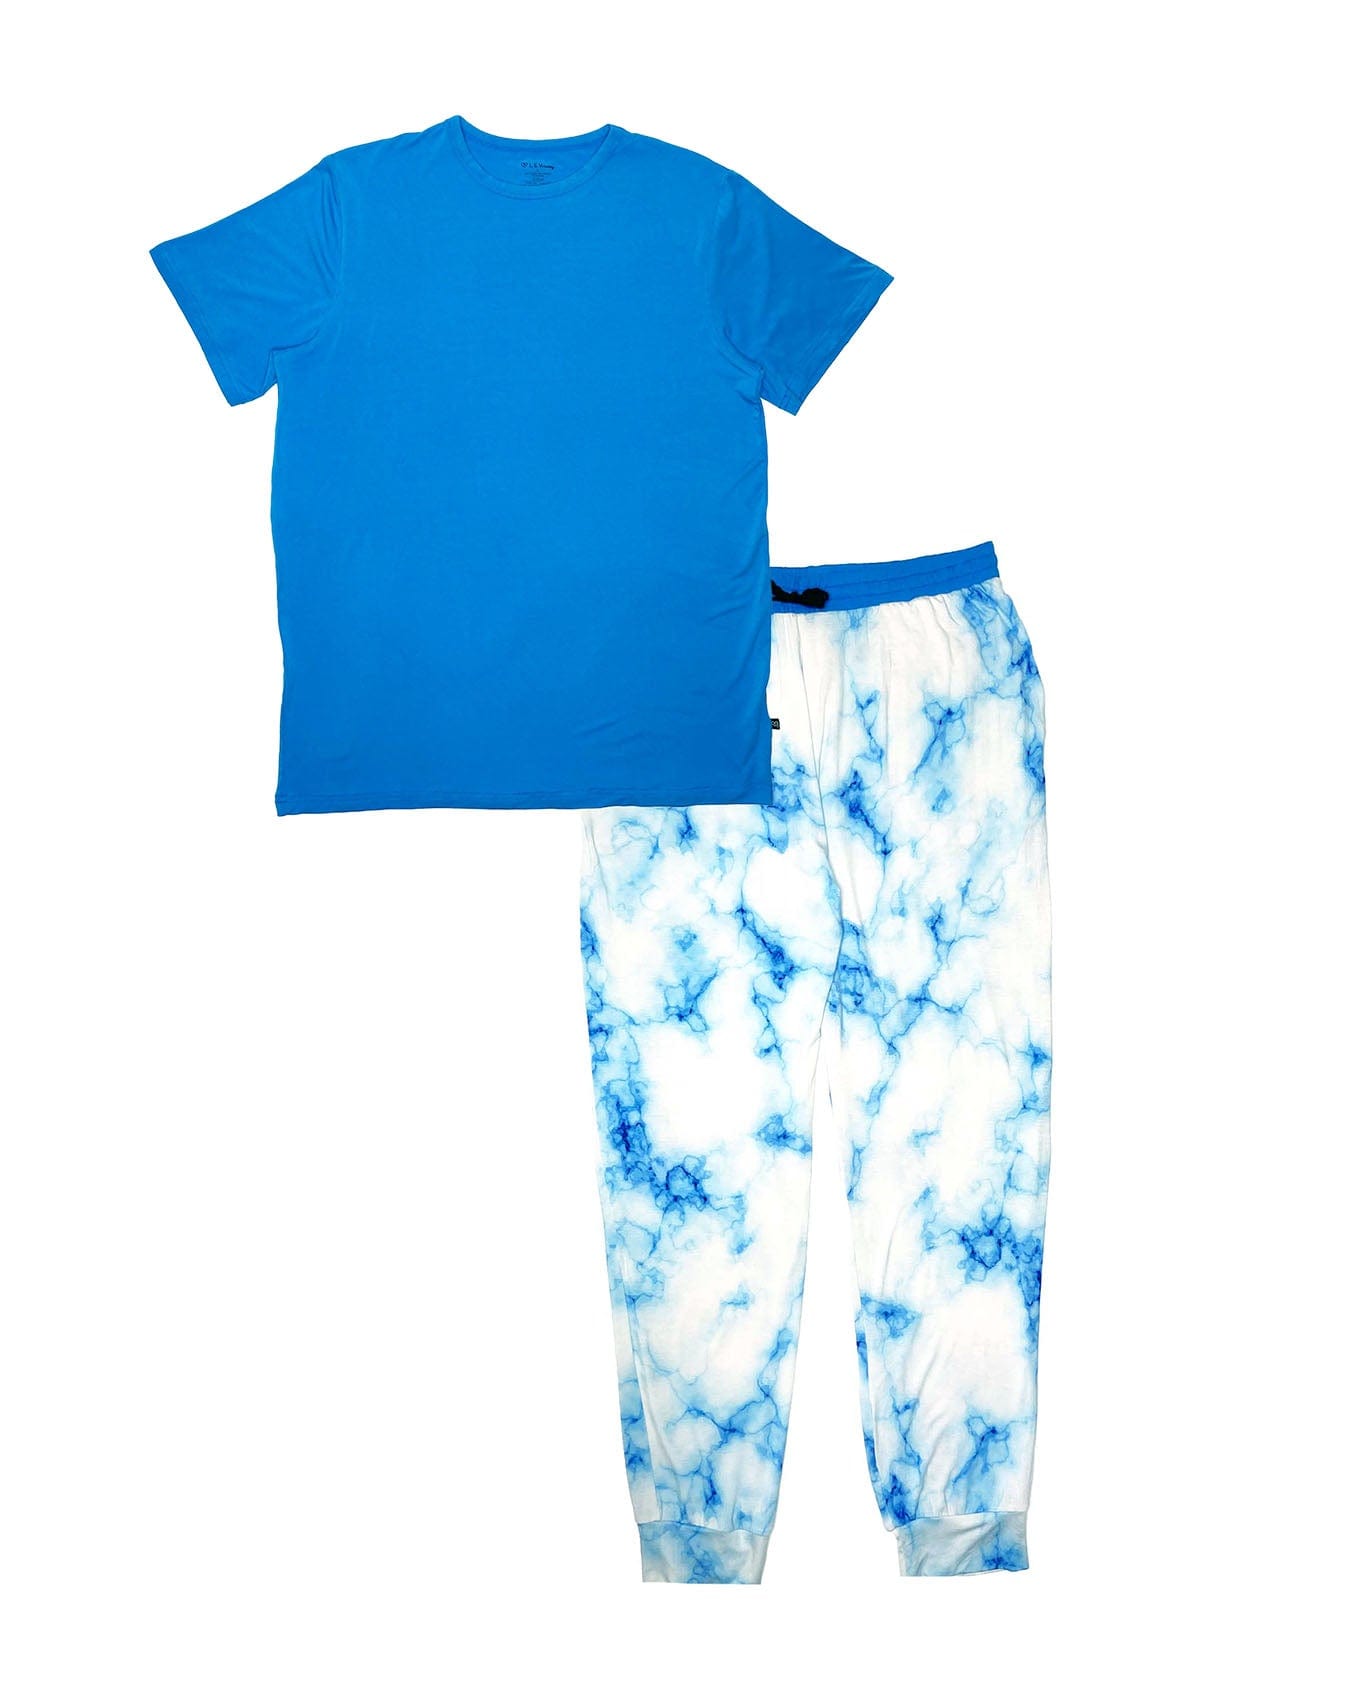 Blue Marble Men's Loungewear